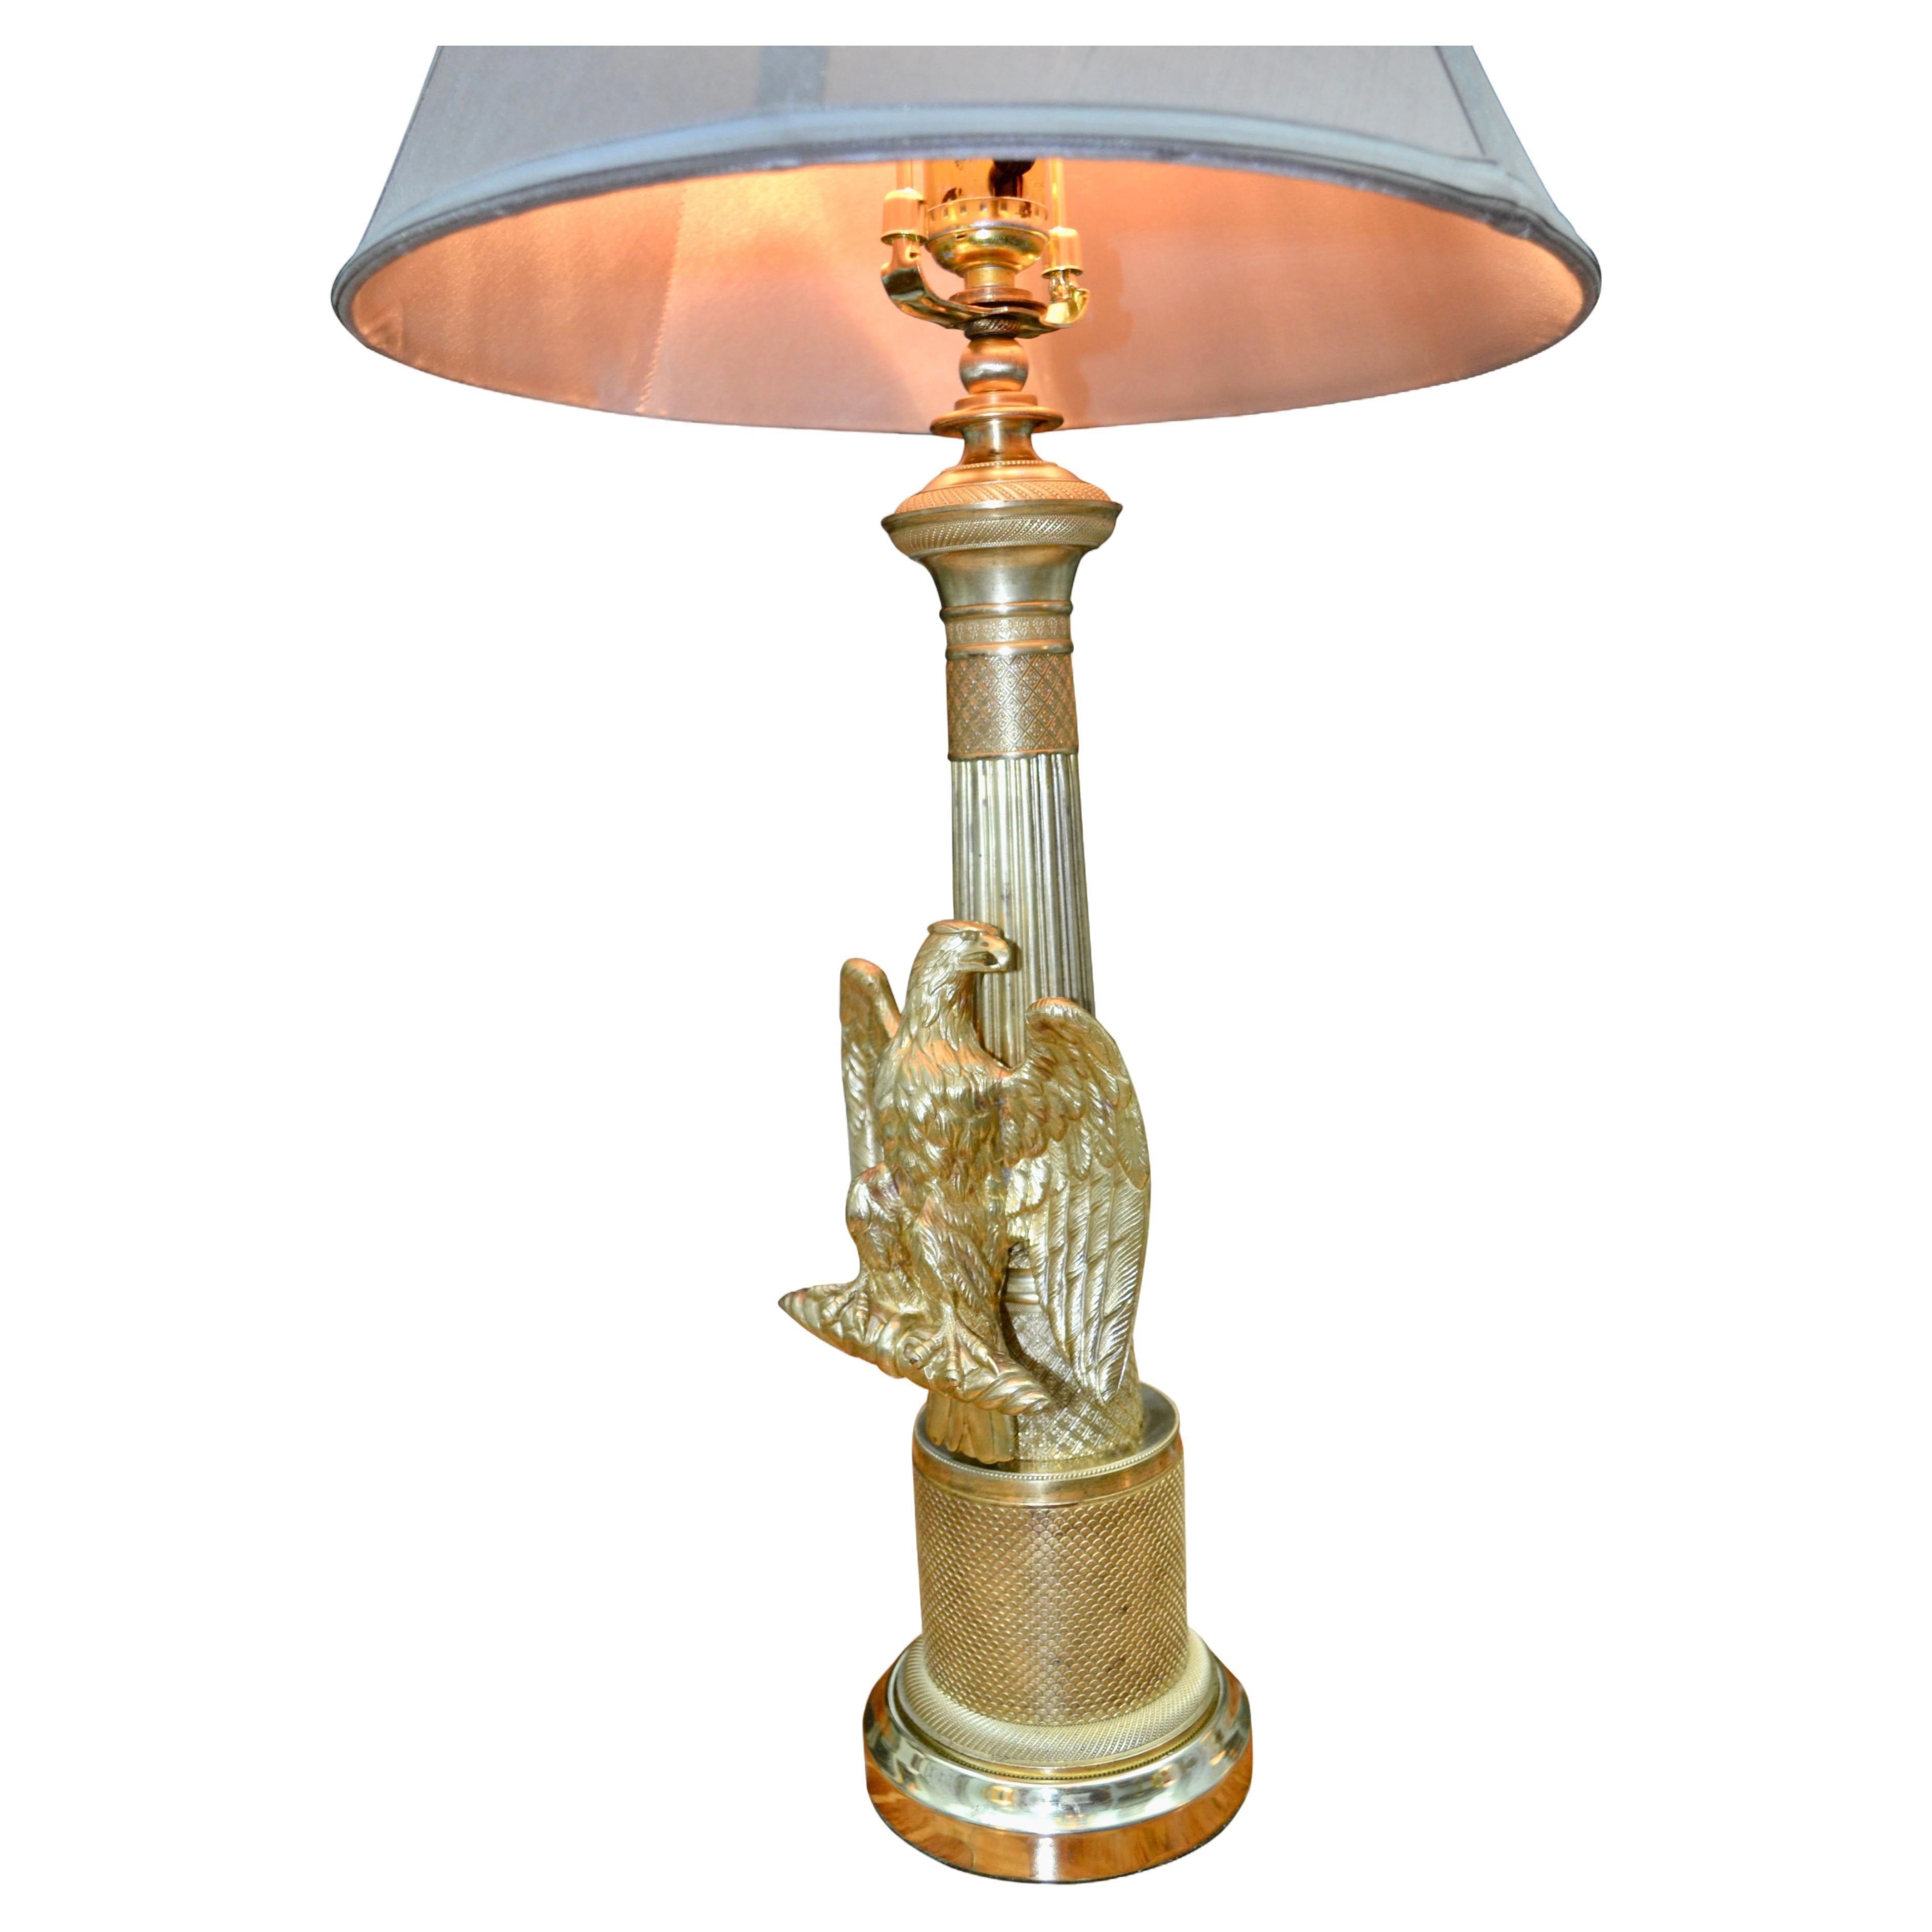 A  Lampe très décorative de style empire français, probablement fabriquée au début du 20e siècle. La colonne en laiton poli était probablement la tige d'un candélabre qui a ensuite été orné d'un aigle debout sur un bandeau, les ailes déployées. Le